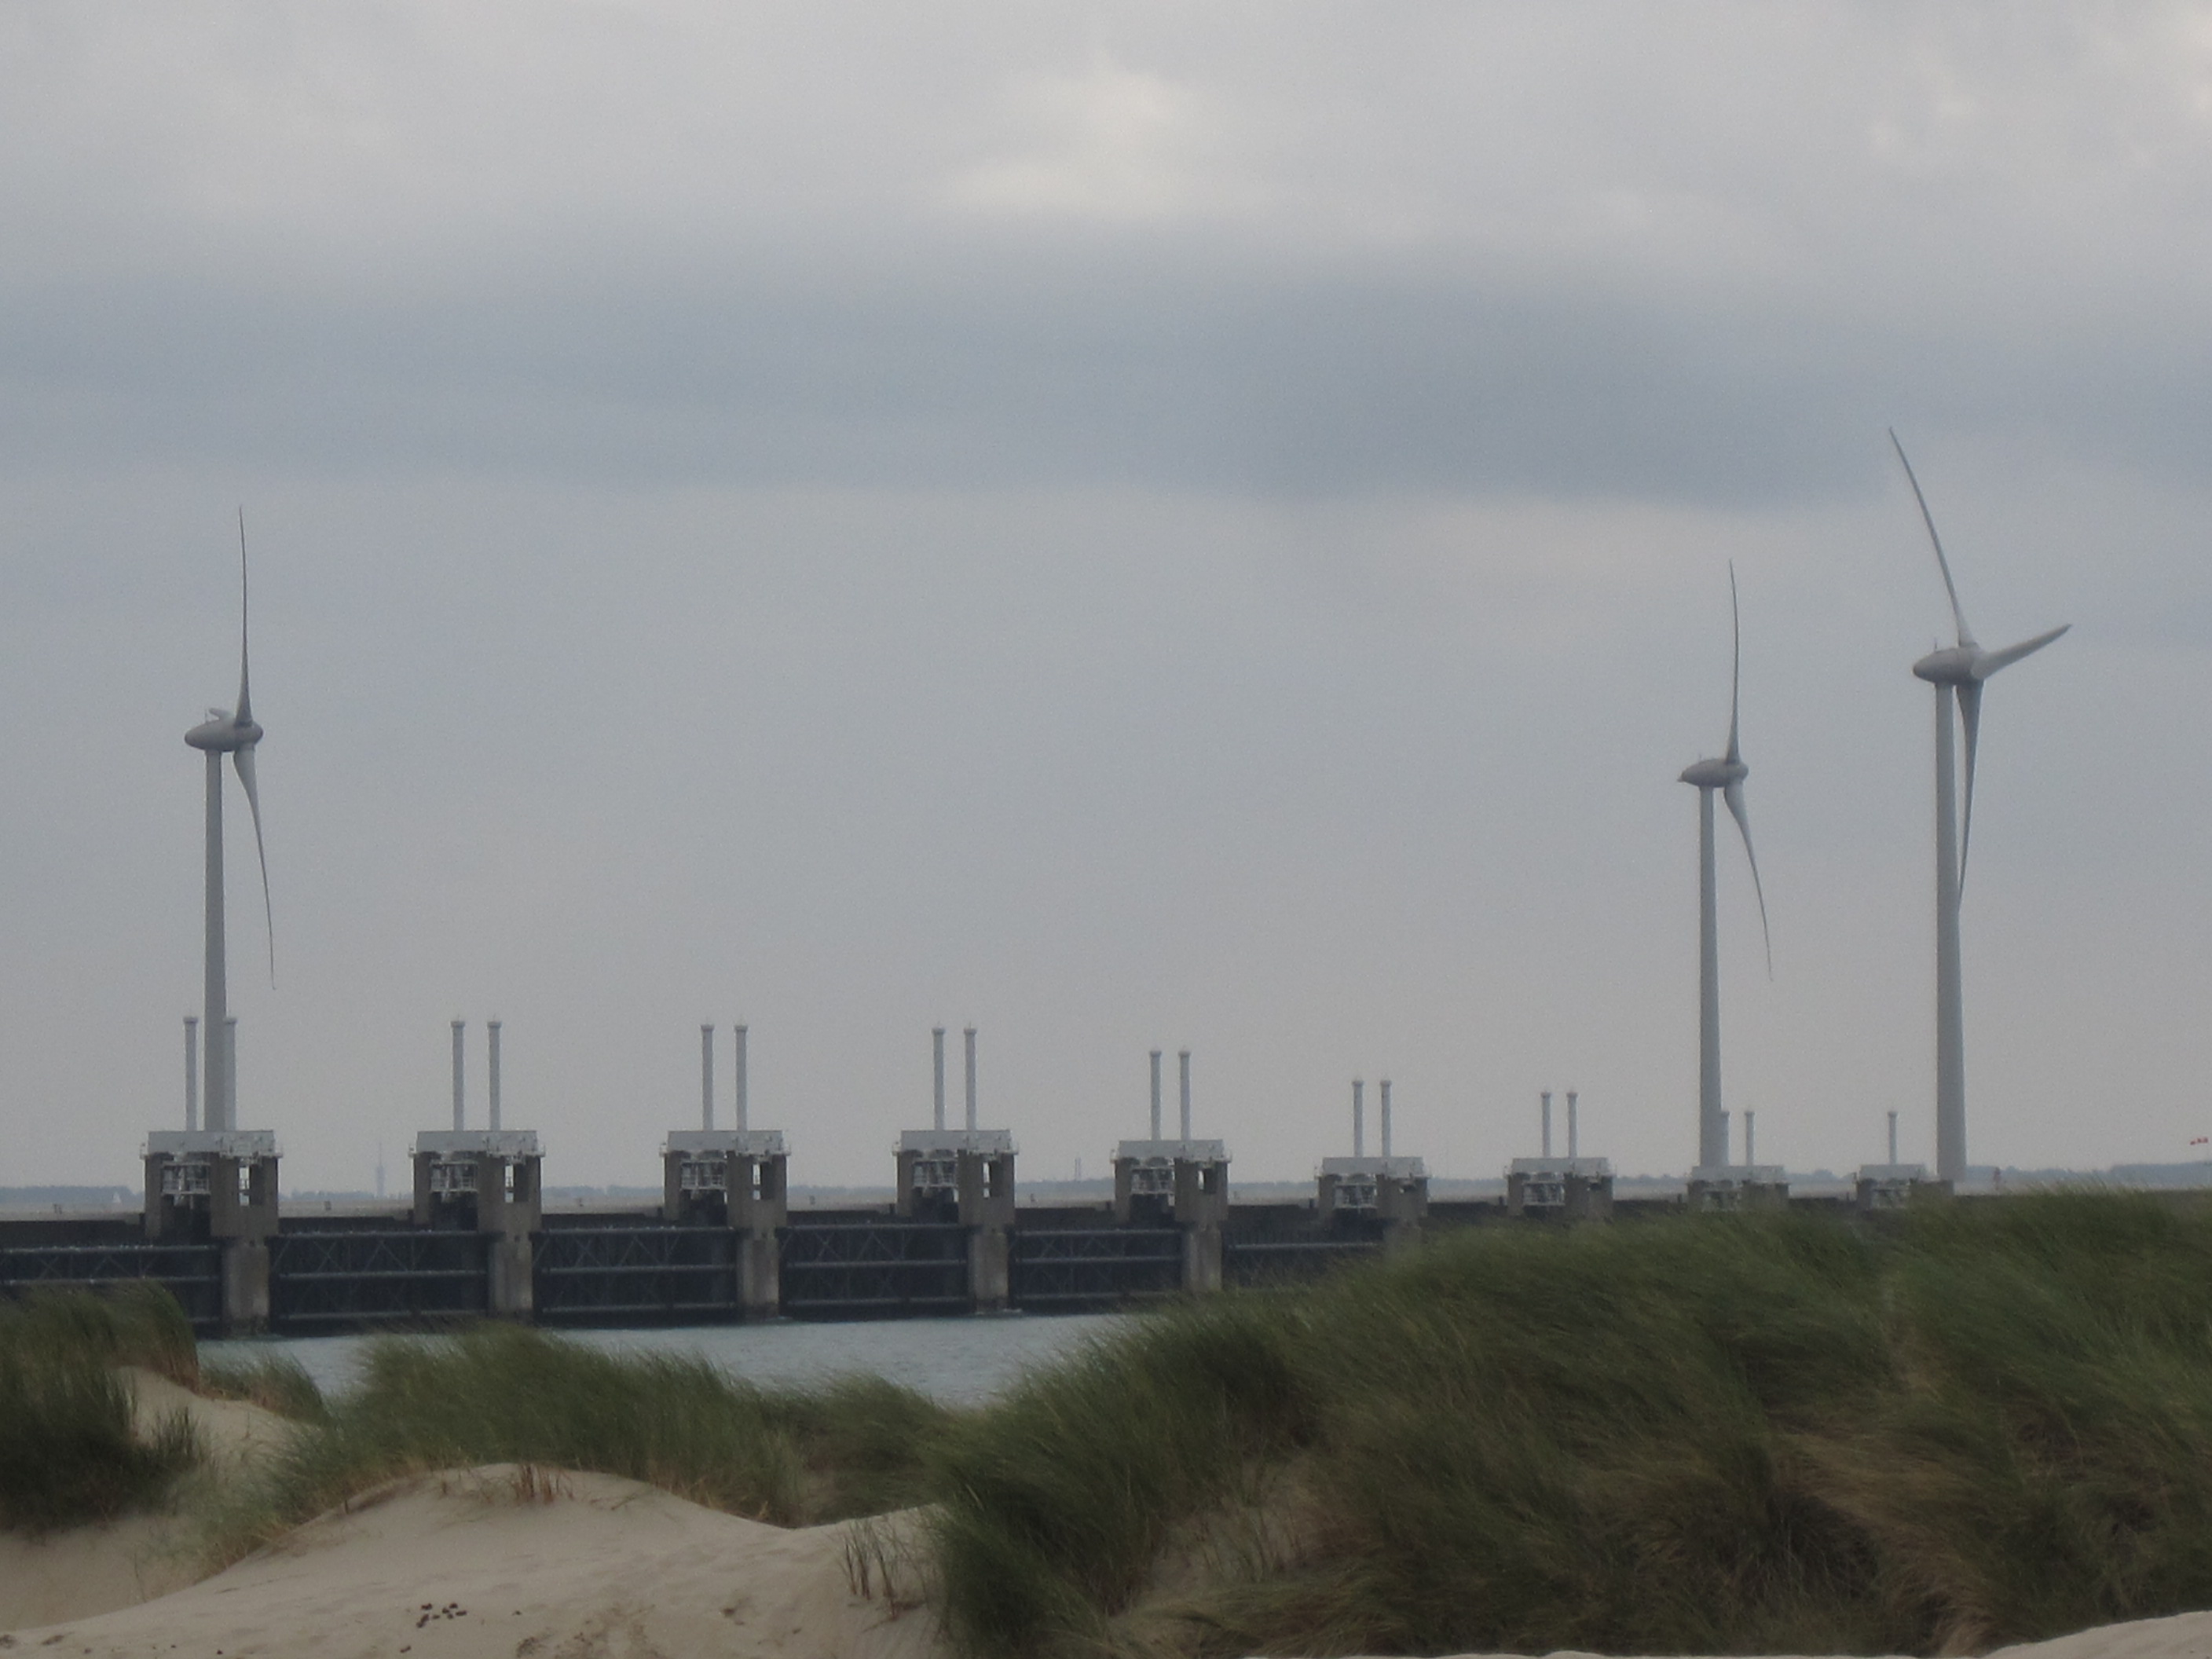 Eastern Scheldt storm surge barrier near Westenschouwen, the Netherlands